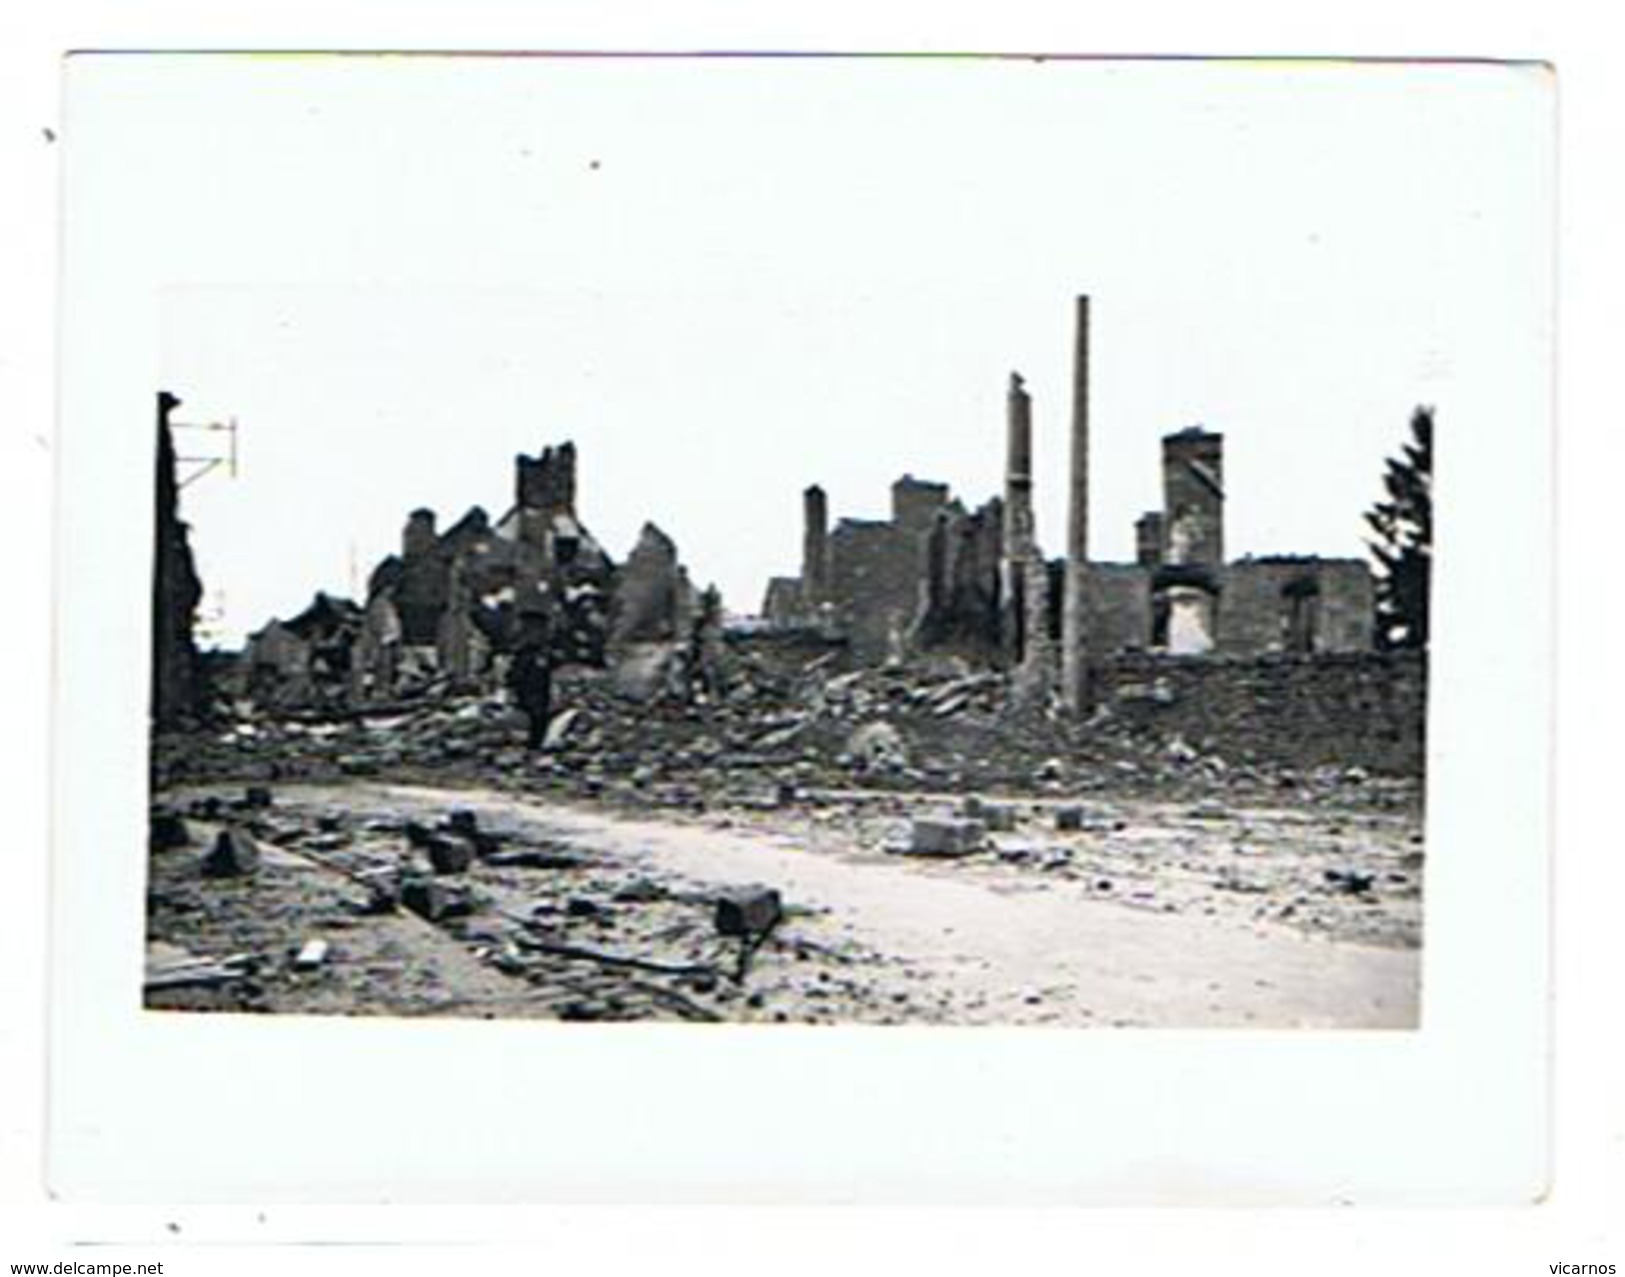 CARTE PHOTO AVRANCHES Lot de31 photos plus1photo sur Lolif au loin sur la dévastation de la ville par l'aviation en 1944